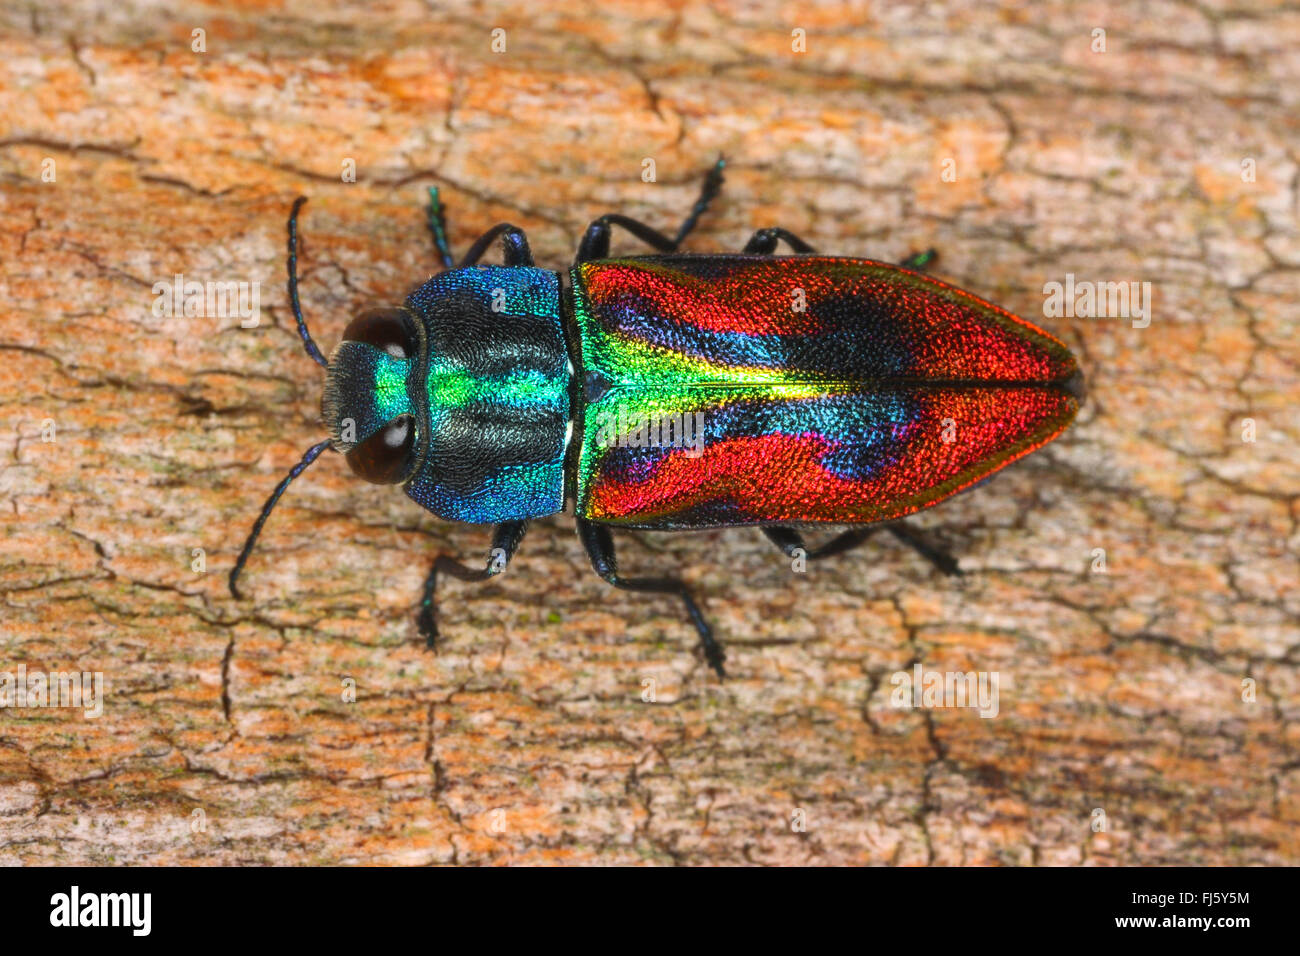 Jewel beetle, coléoptère Bois (Anthaxia candens), sur bois, Allemagne Banque D'Images